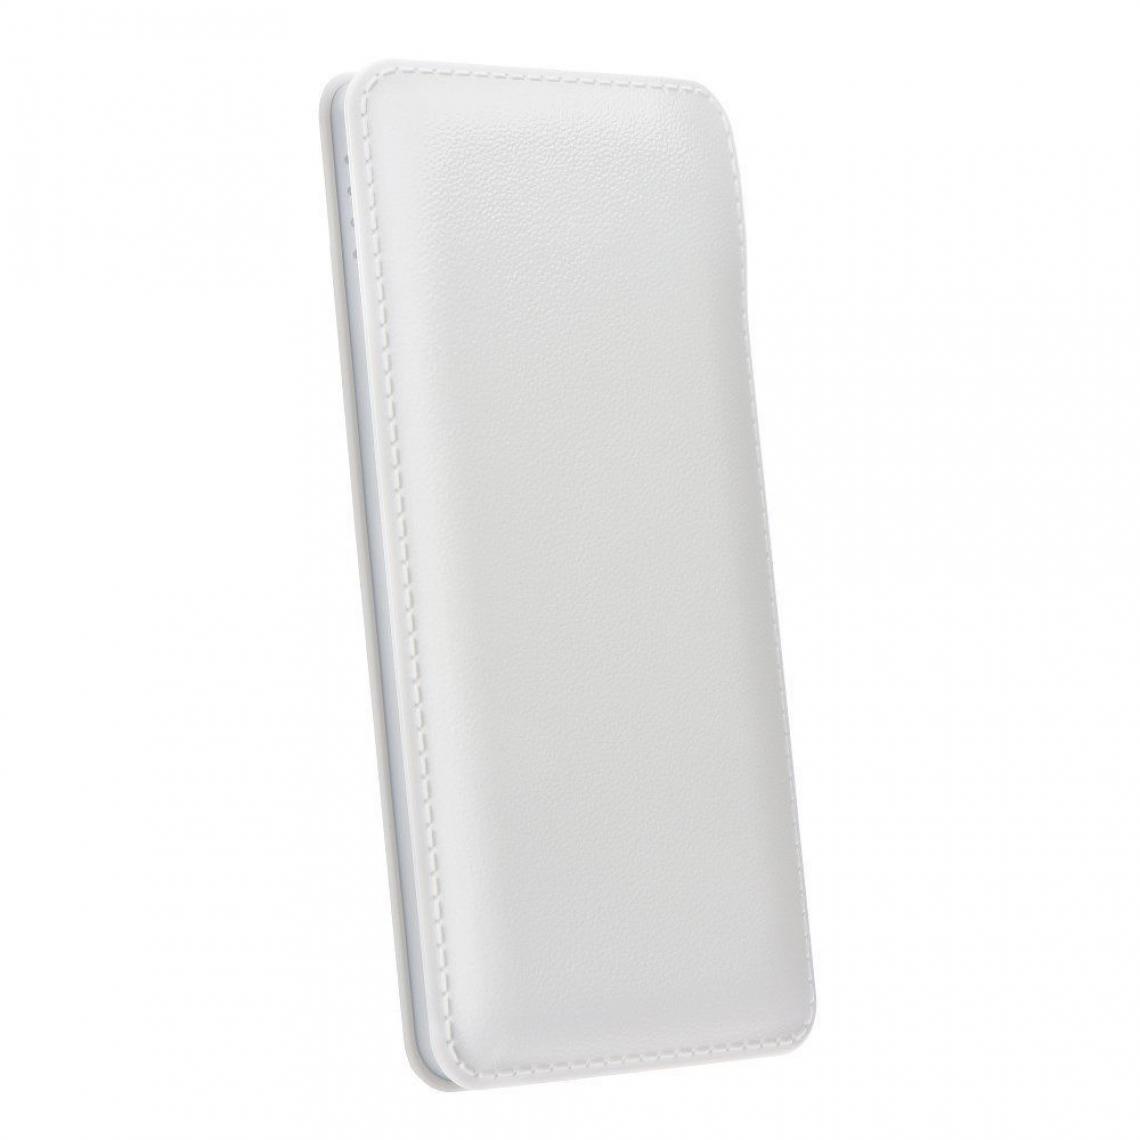 Ozzzo - Chargeur batterie externe 20000 mAh powerbank ozzzo blanc pour SAMSUNG Galaxy A8 2018 A530FD - Autres accessoires smartphone